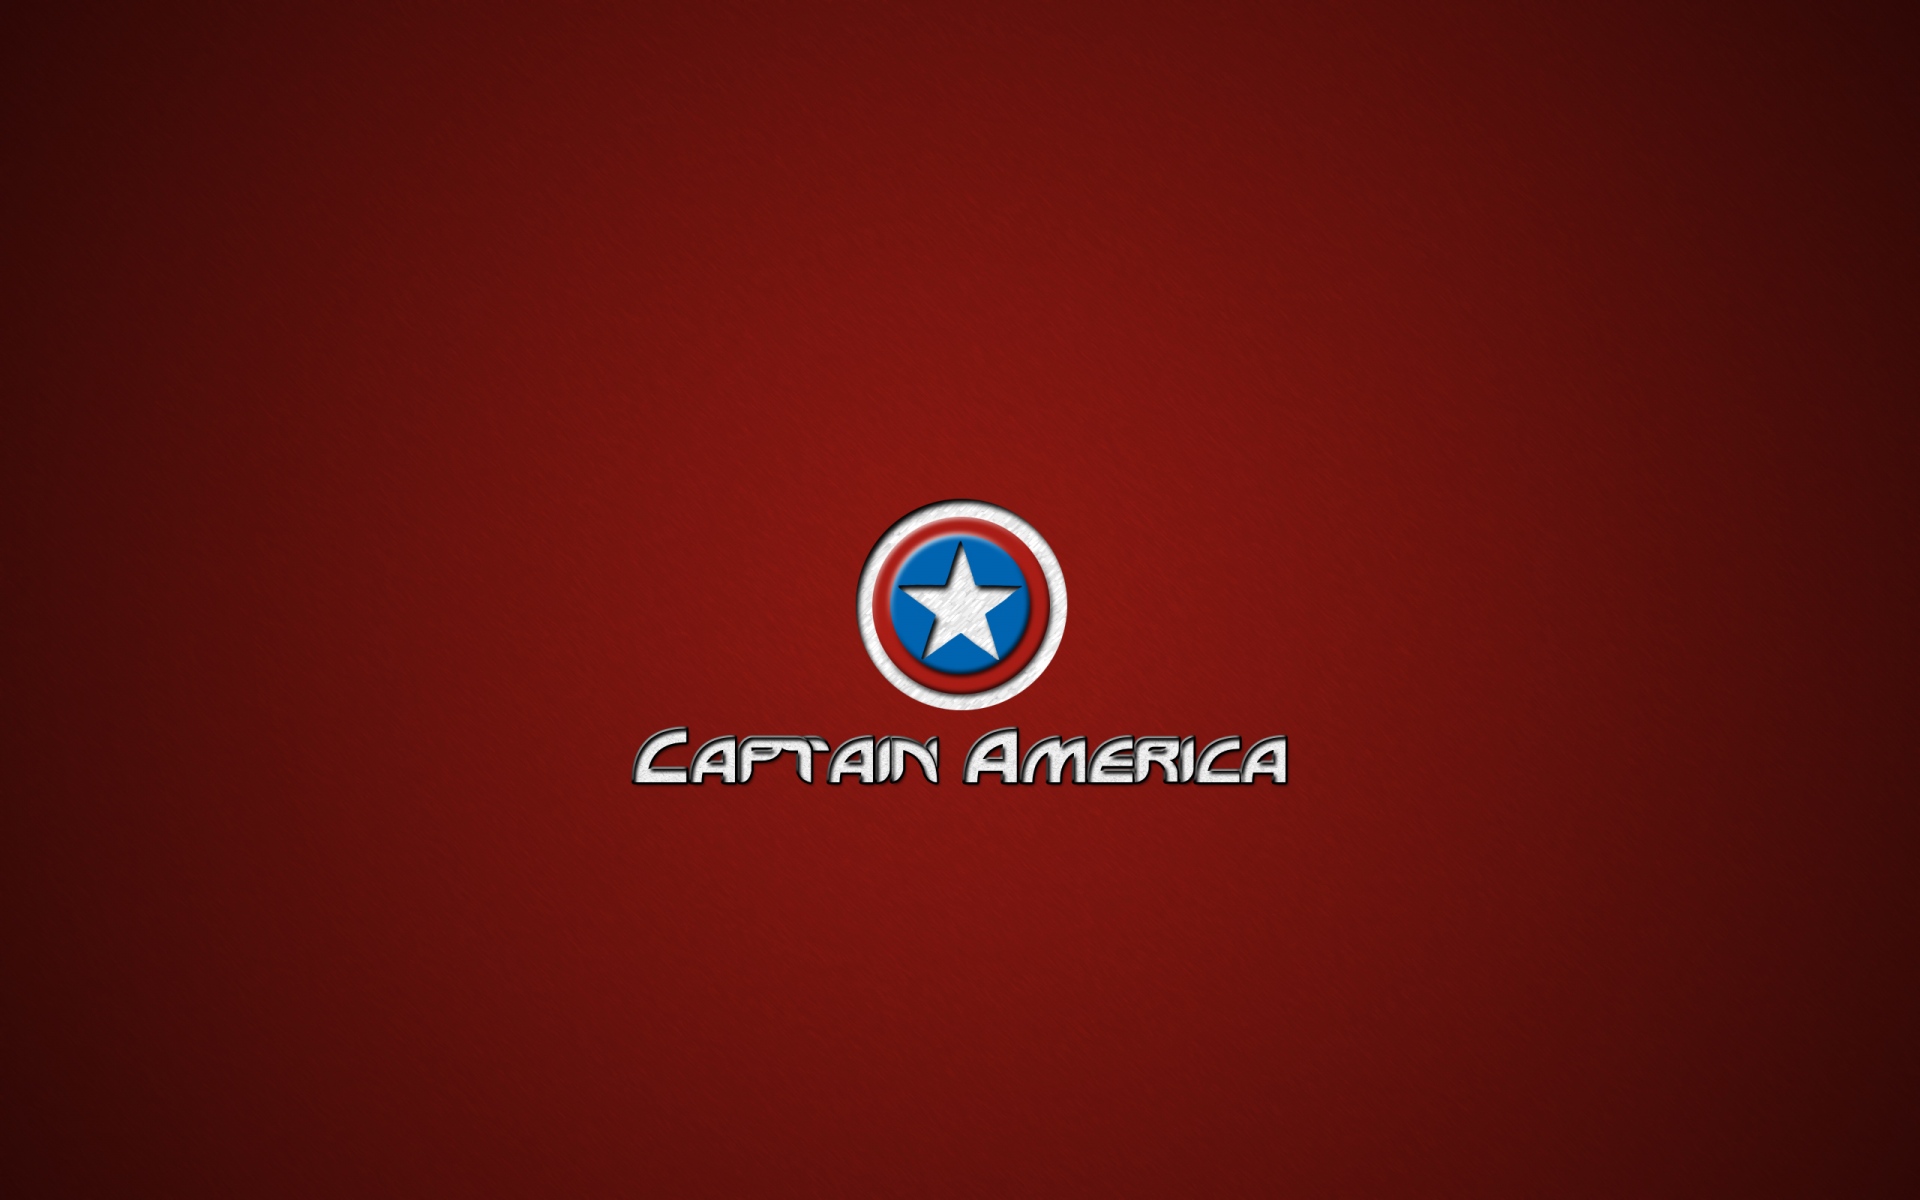 Картинки Капитан америка, чудо, герой, мститель фото и обои на рабочий стол